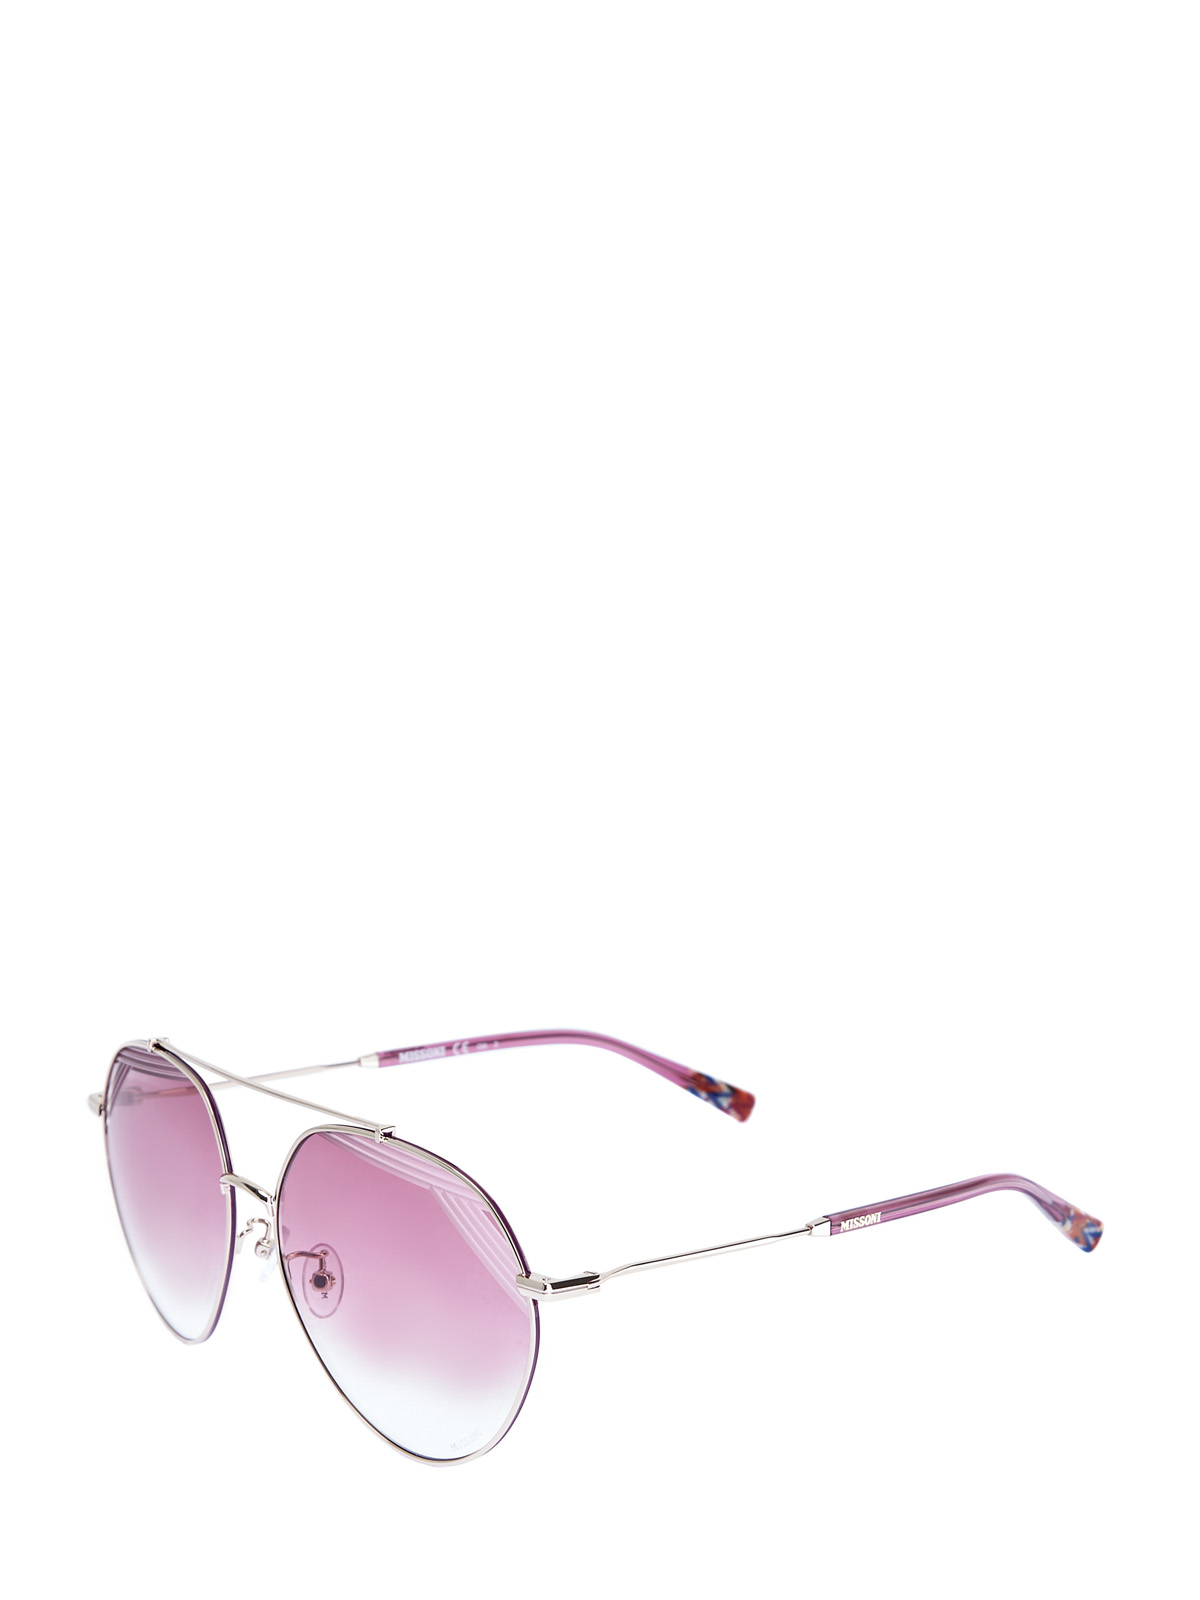 Солнцезащитные очки-oversize в тонкой металлической оправе MISSONI, цвет розовый, размер S;M;L - фото 2